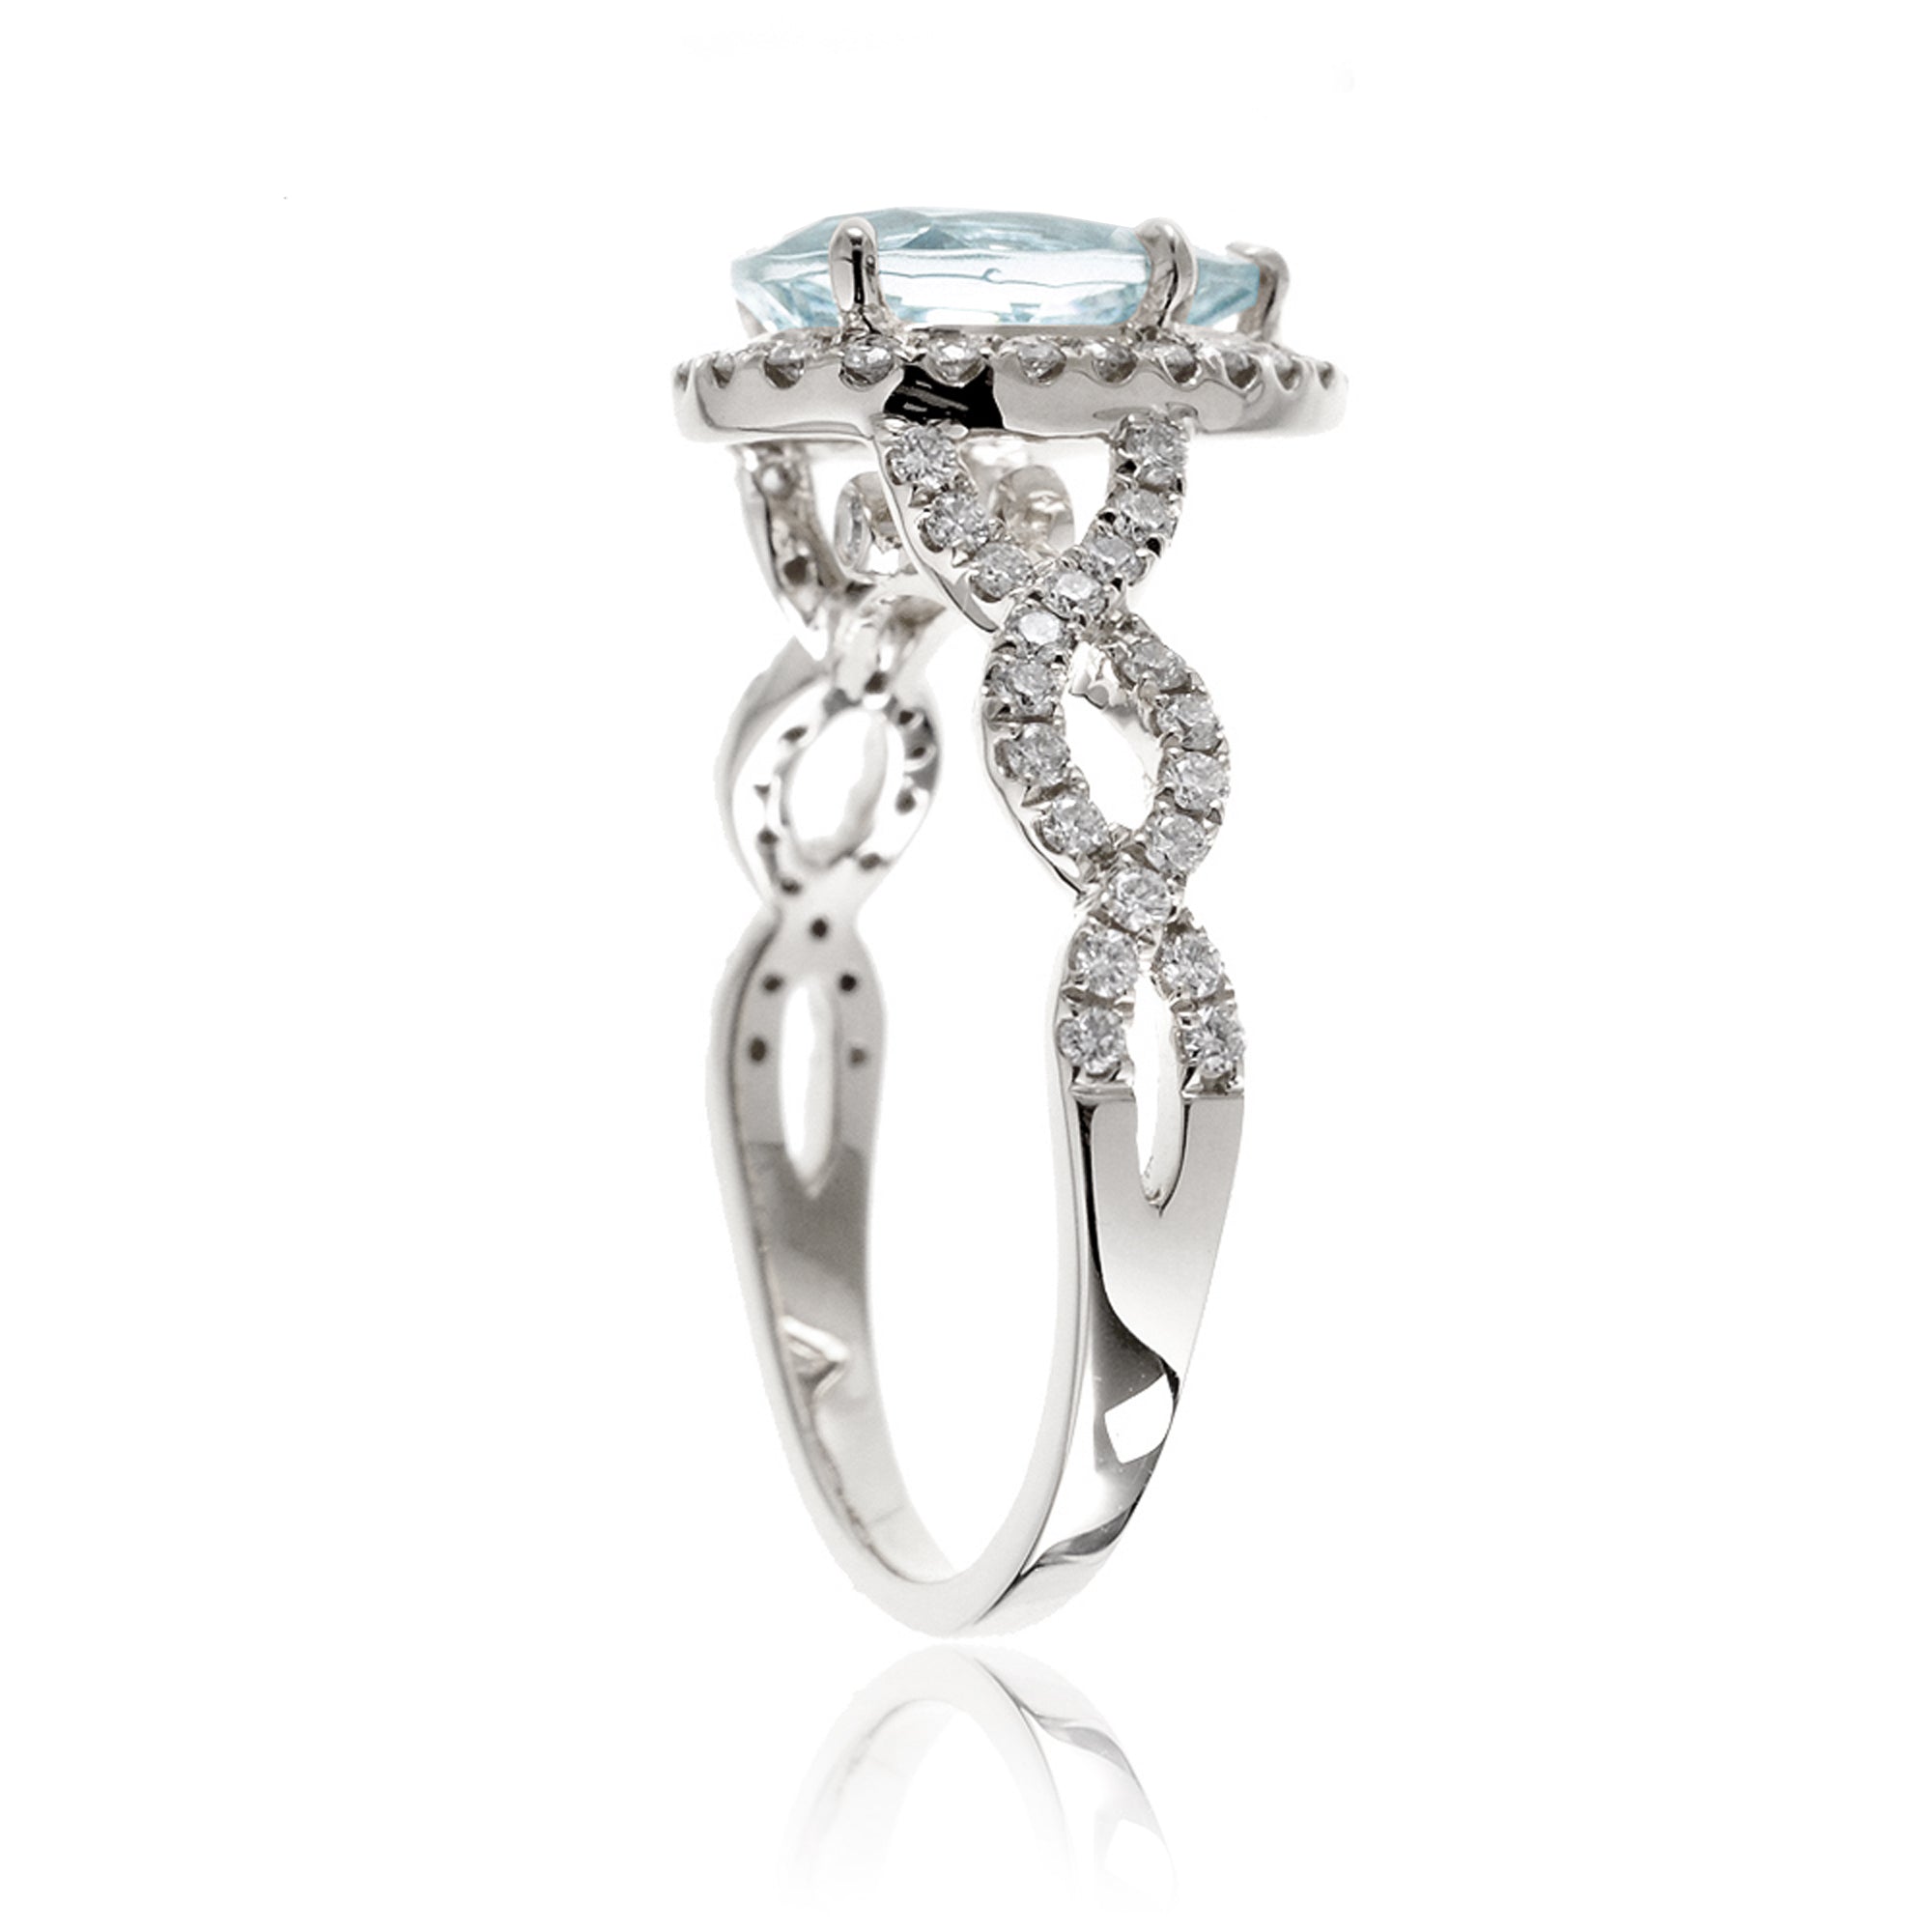 Pear aquamarine gemstone ring diamond halo twisted band white gold